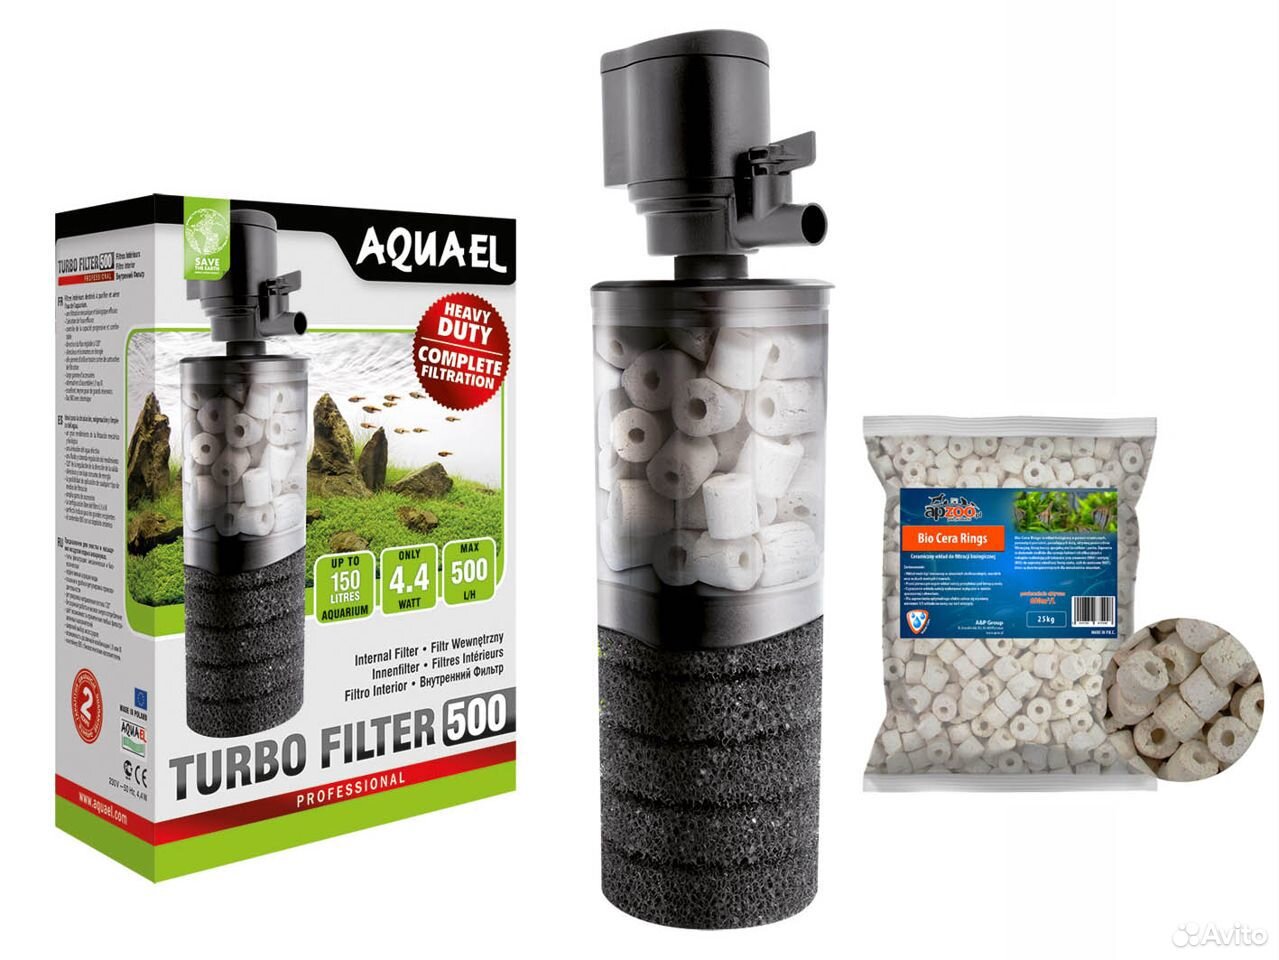 Aquael pat. Фильтр для воды Aquael Turbo 500. Aquael Turbo Filter 1000. Фильтр для аквариума внутренний Aquael Turbo Filter 1000. Tetratec in1000 - внутренний фильтр 1000 л/ч для аквариумов до 200 л.